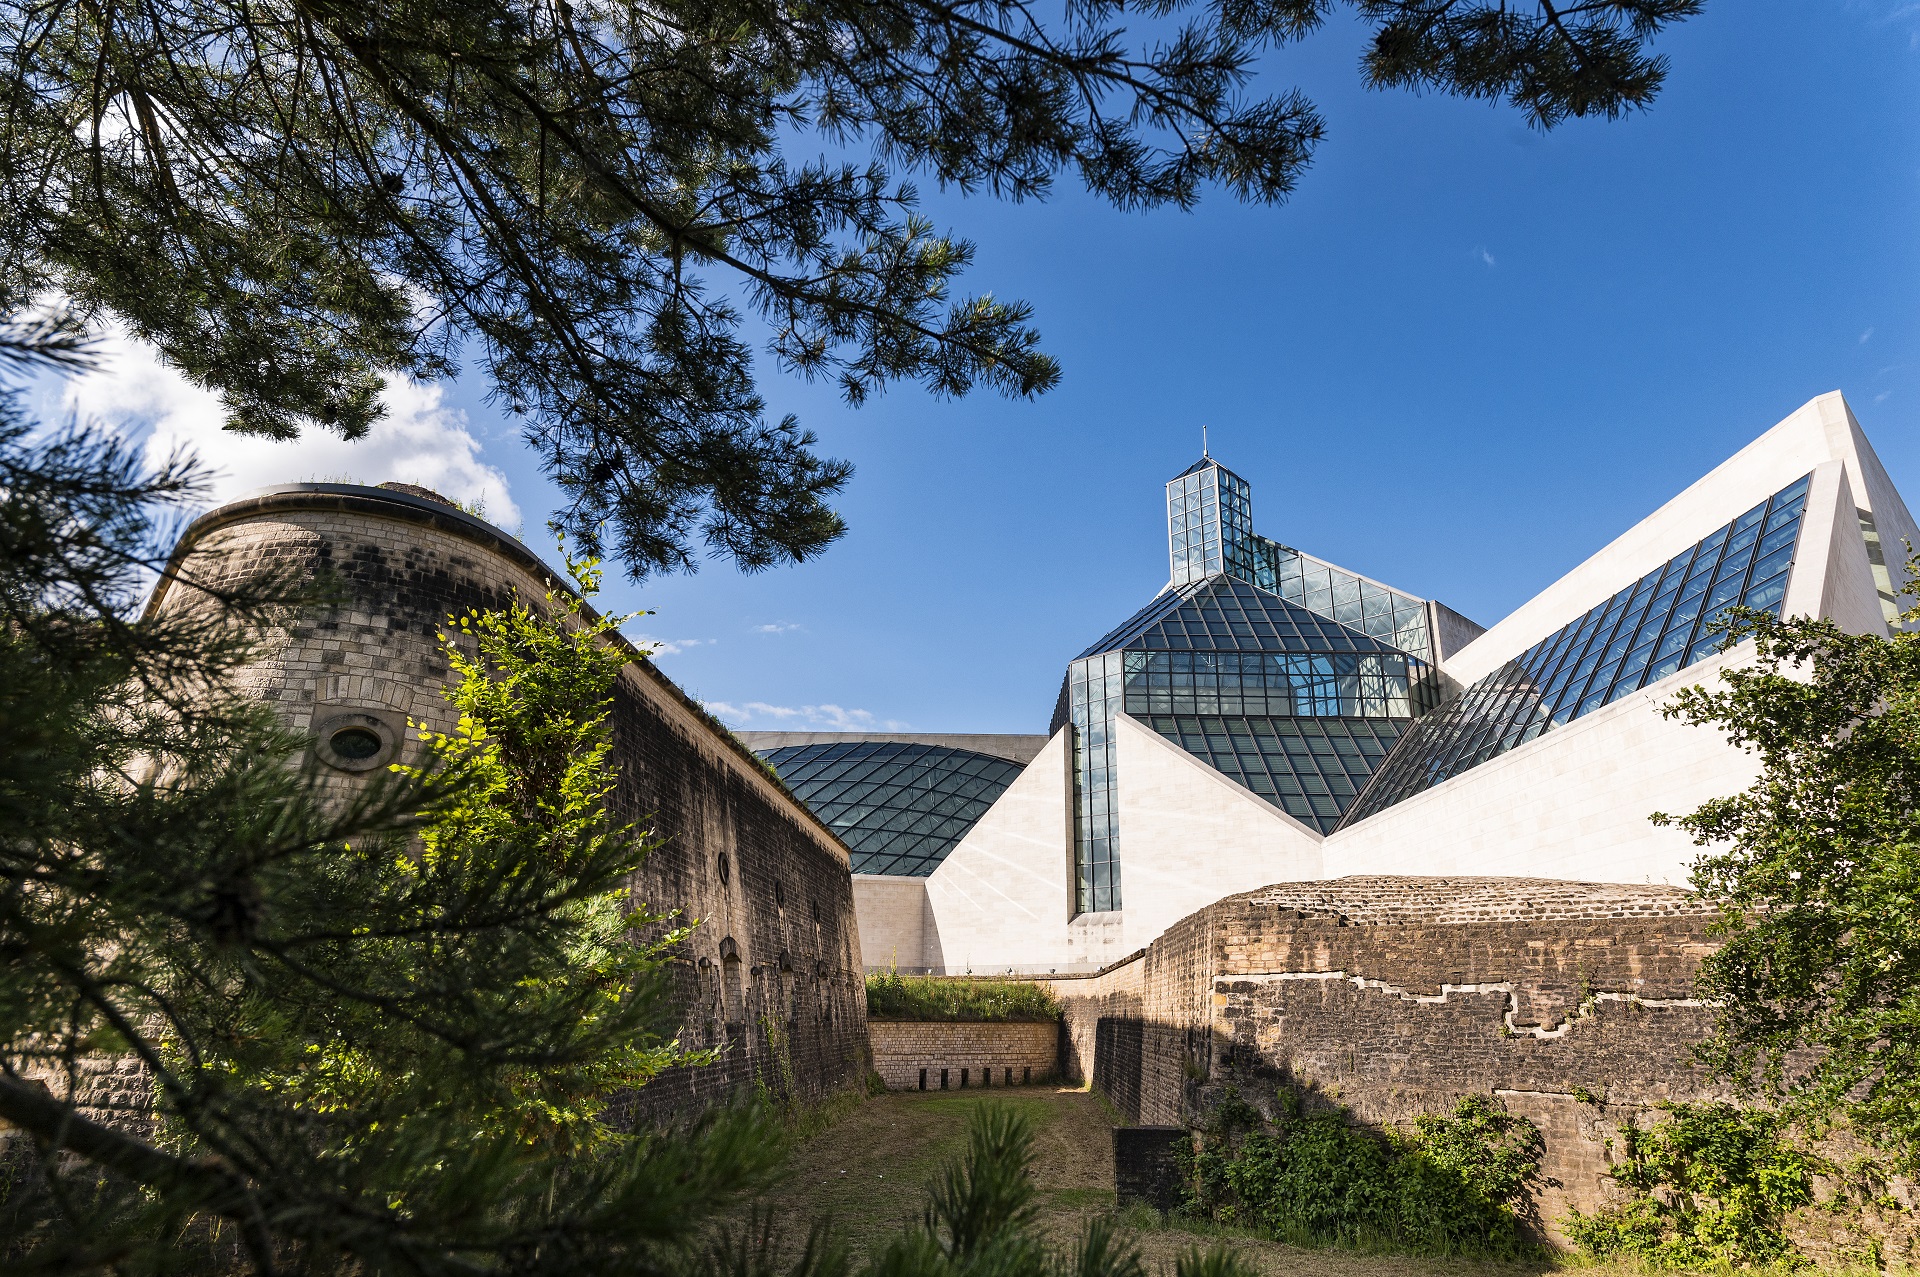 Die Rückseite des Kunstmuseum Mudam mit dem Fort Thüngen und dem Oark "Dräi Eechelen".Die Sonne scheint und der Himmel ist blau.